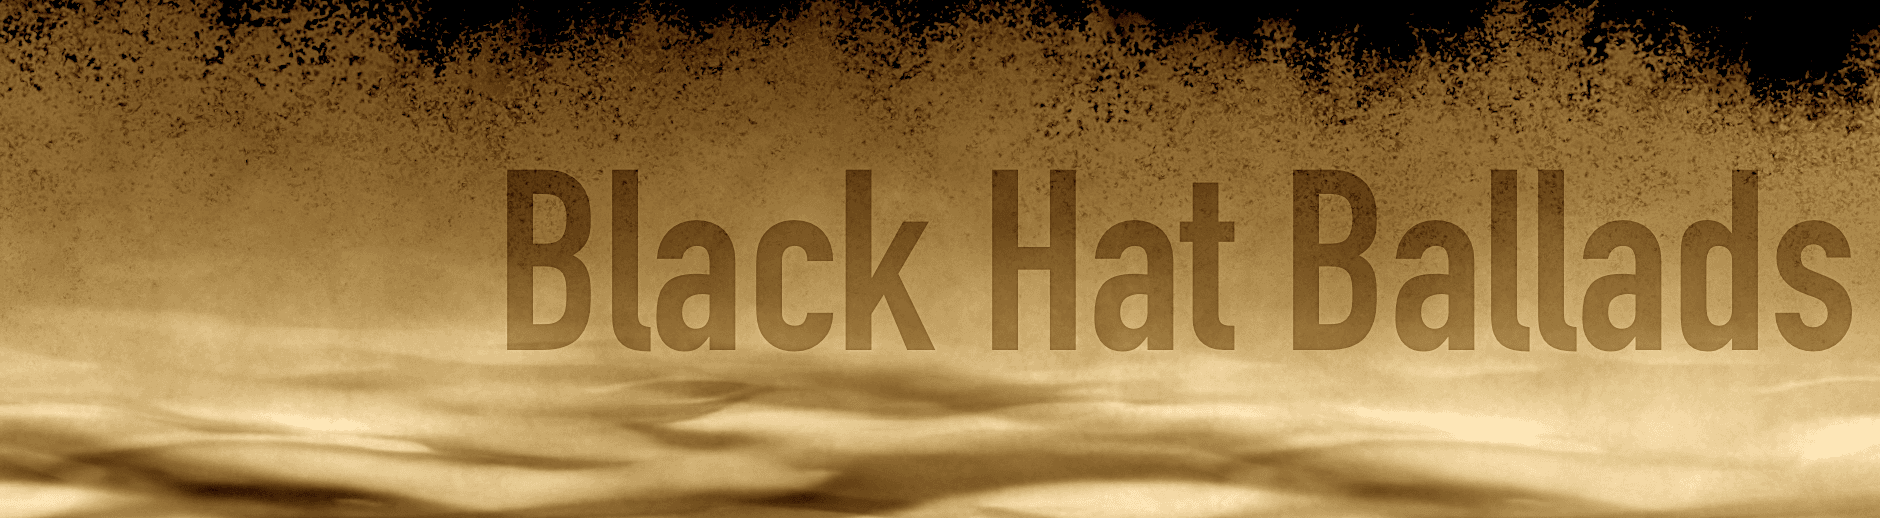 BlackHatBallads banner